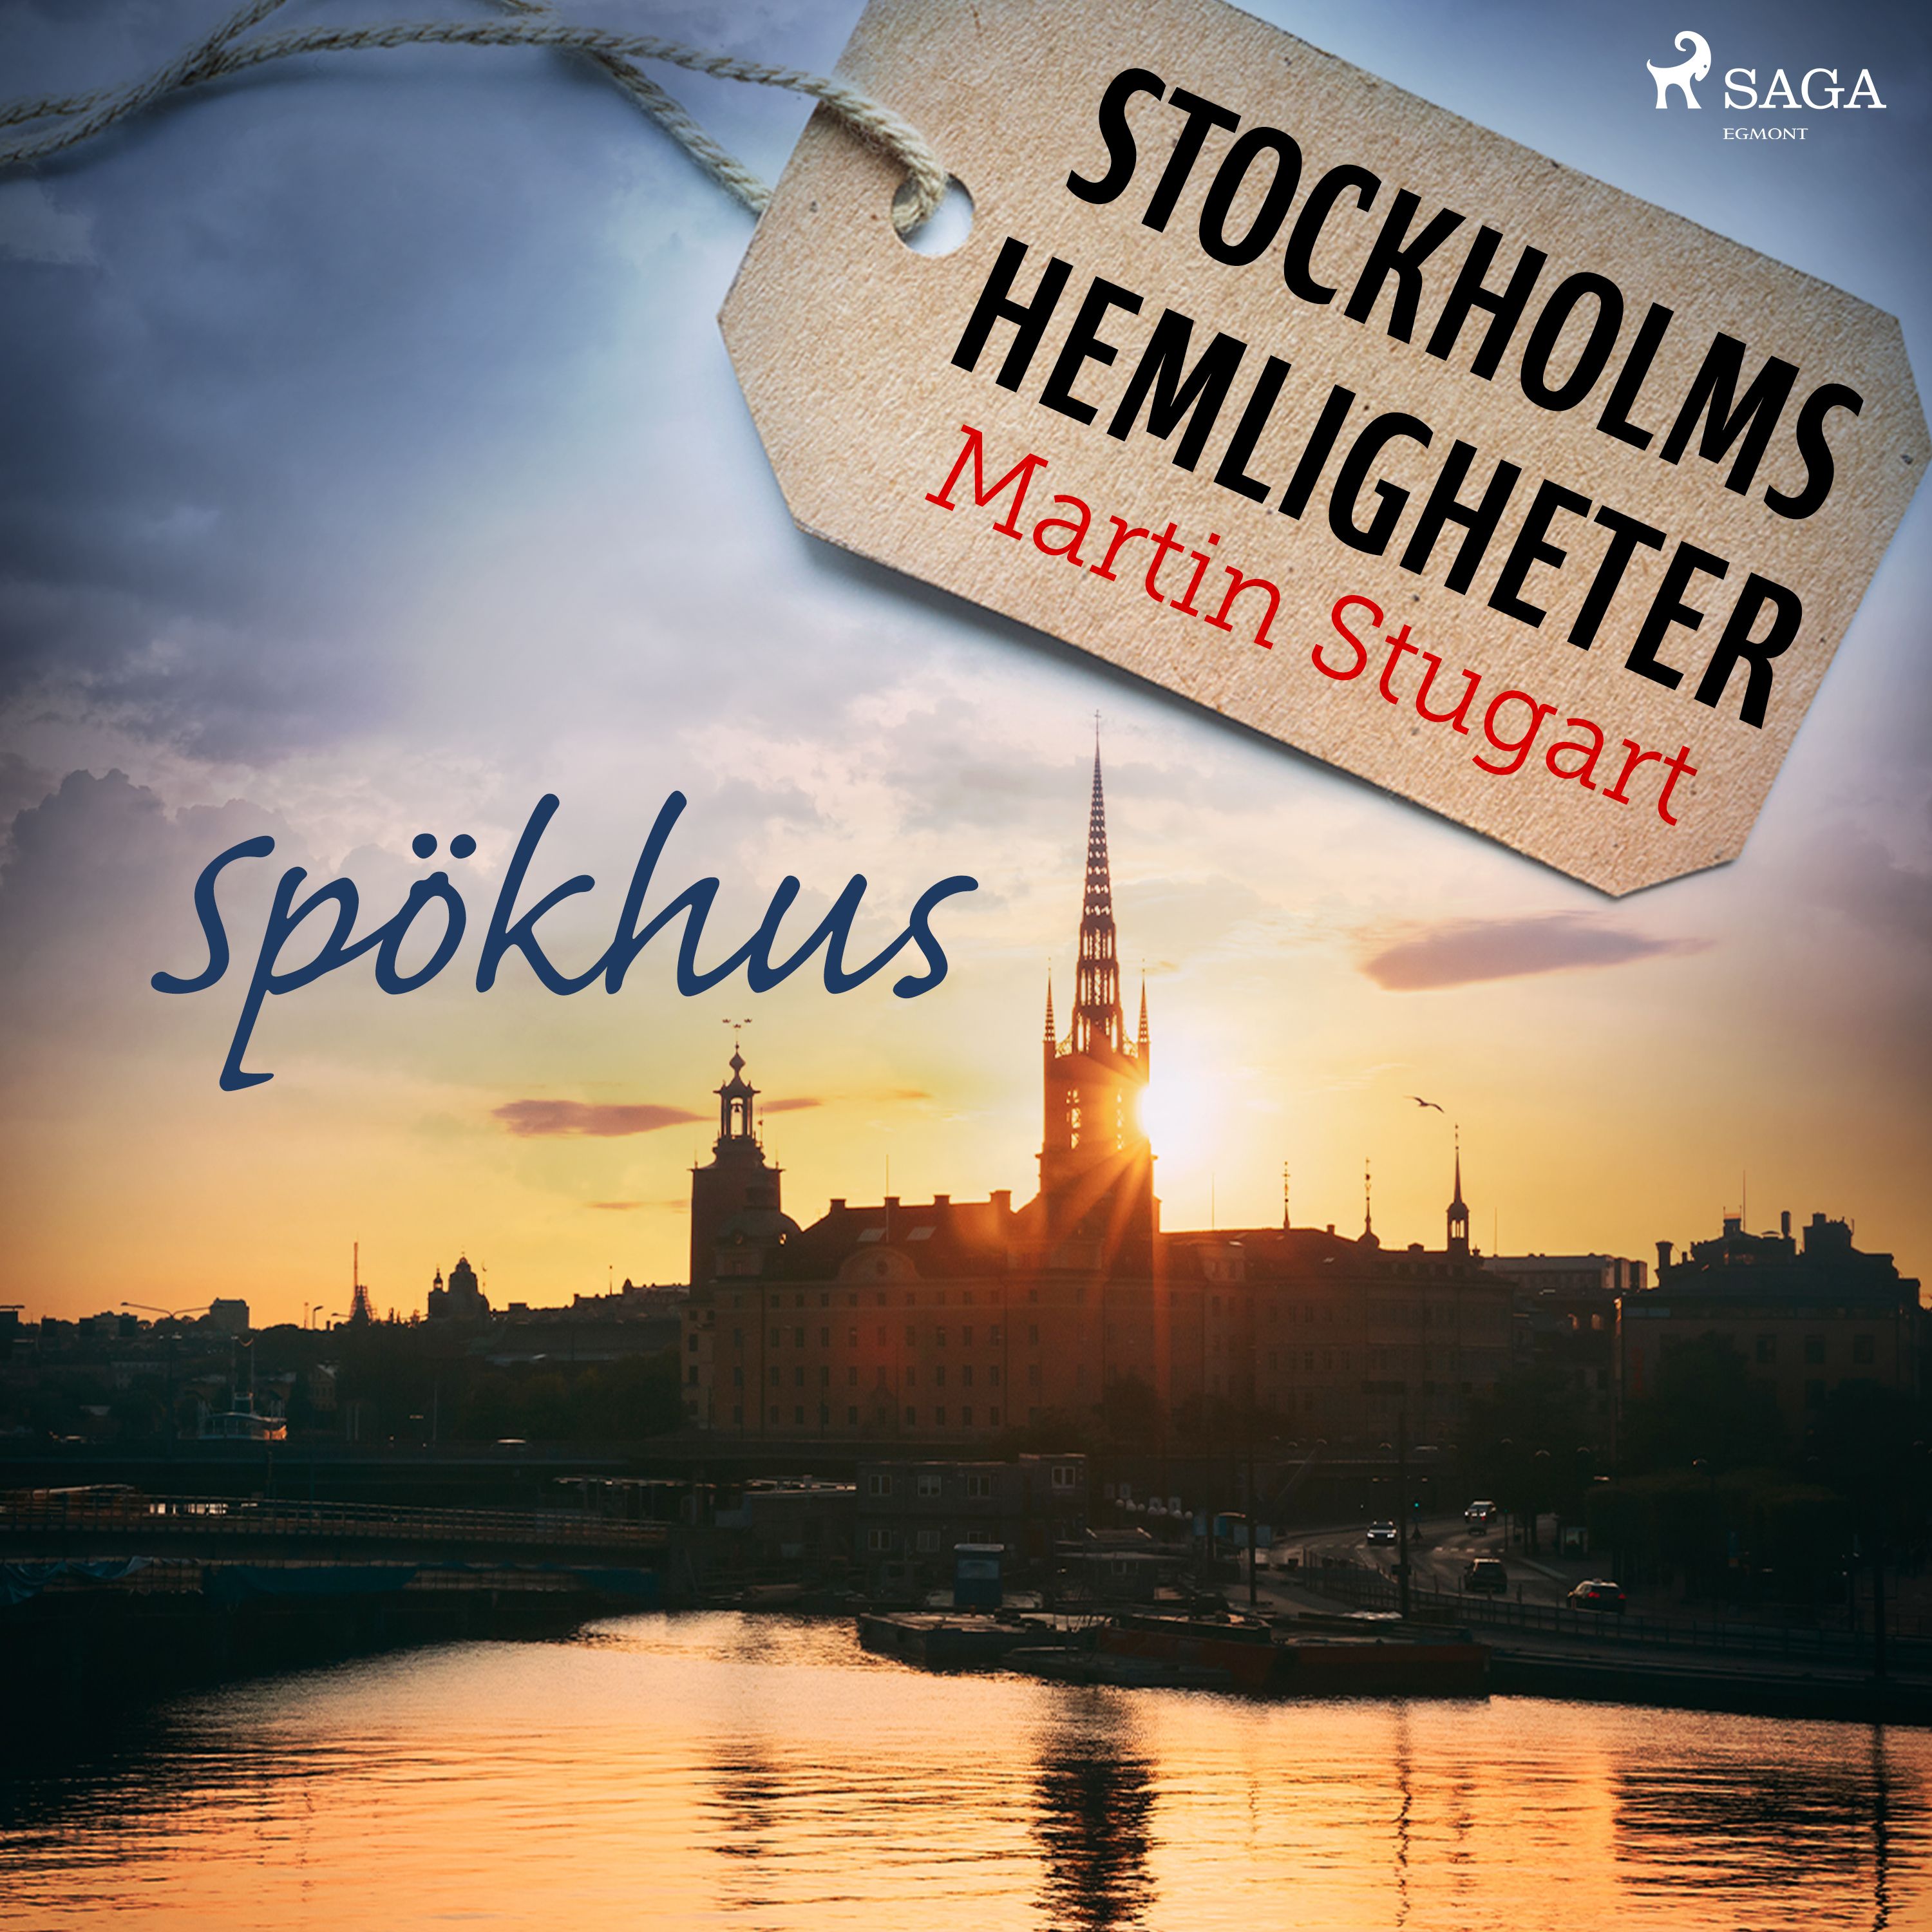 Stockholms hemligheter: Spökhus, audiobook by Martin Stugart